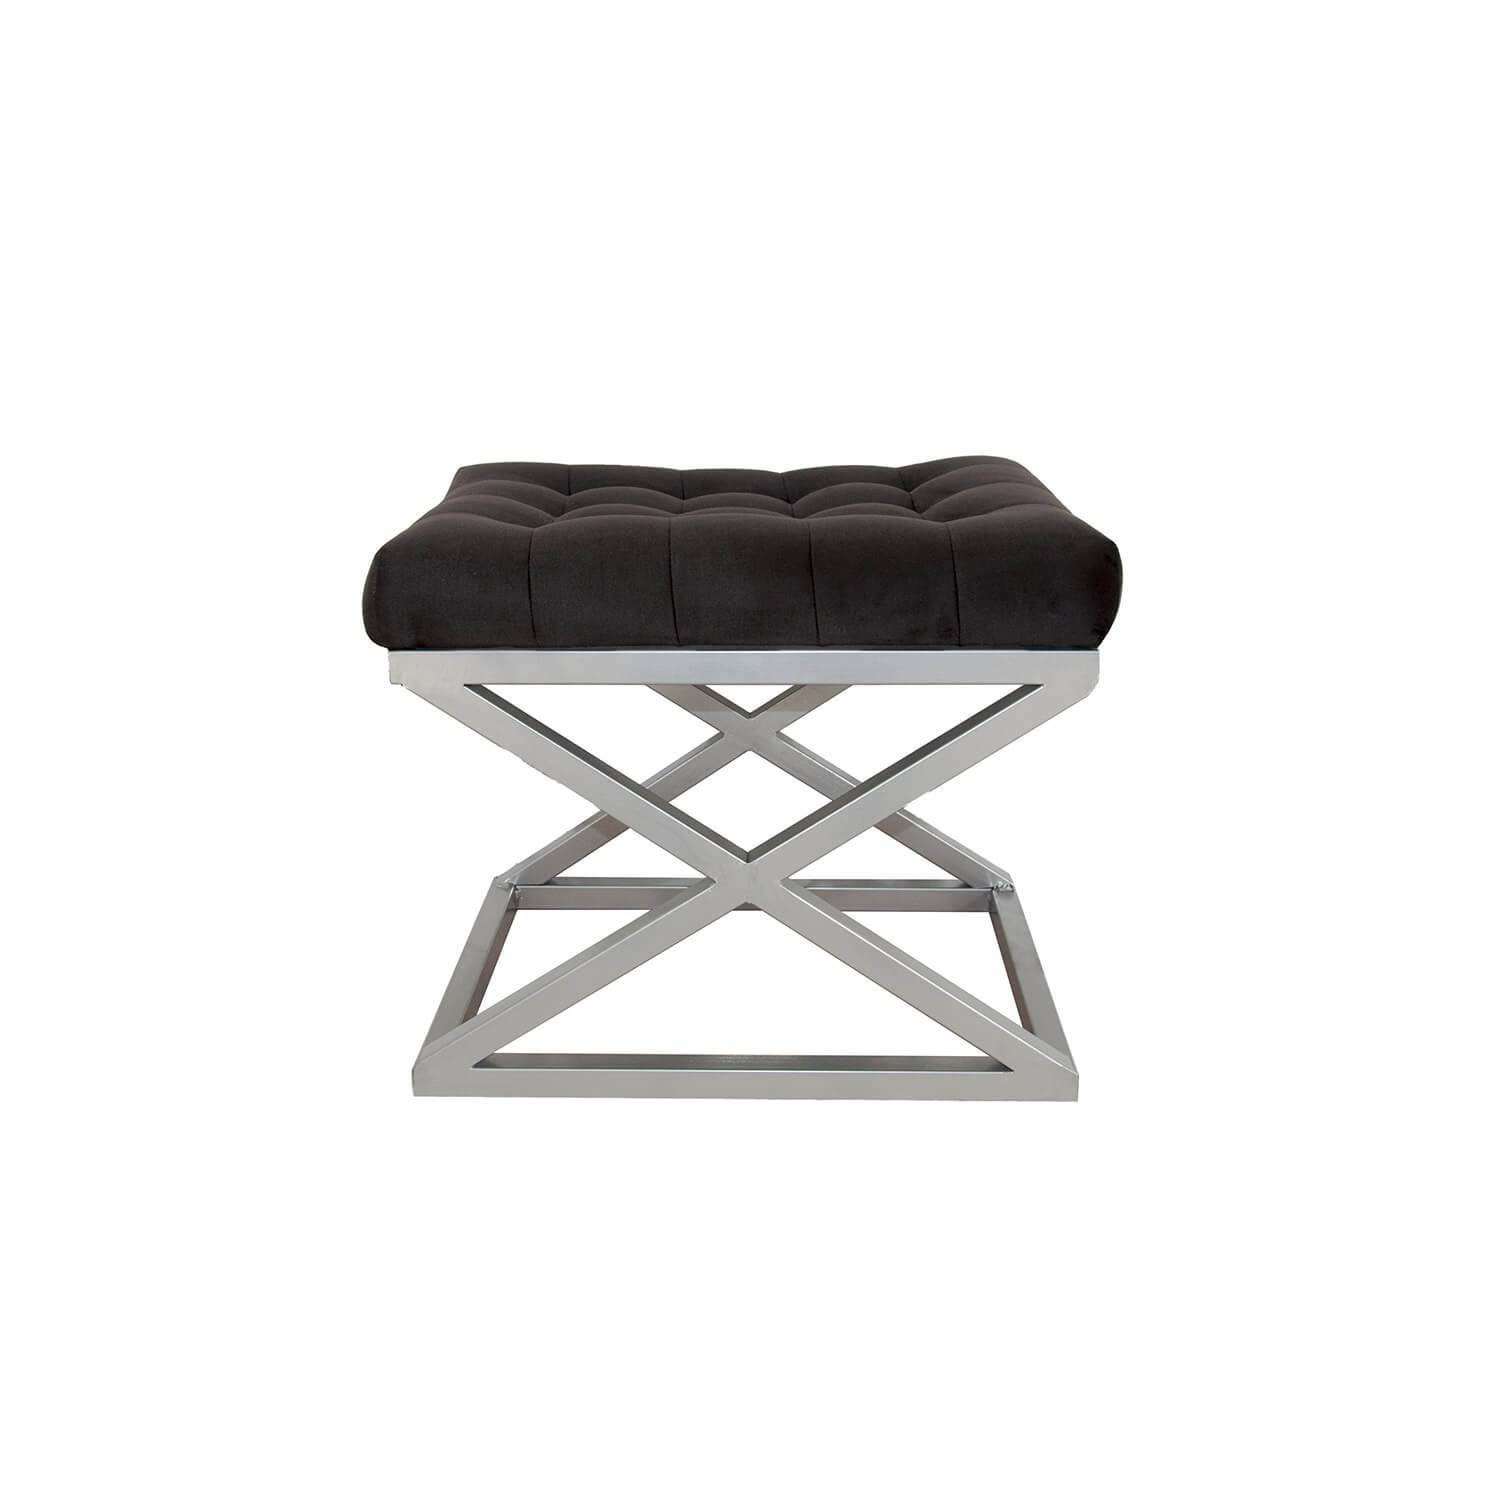 Taburete Ulad de metal plateado y terciopelo negro, asiento tapizado